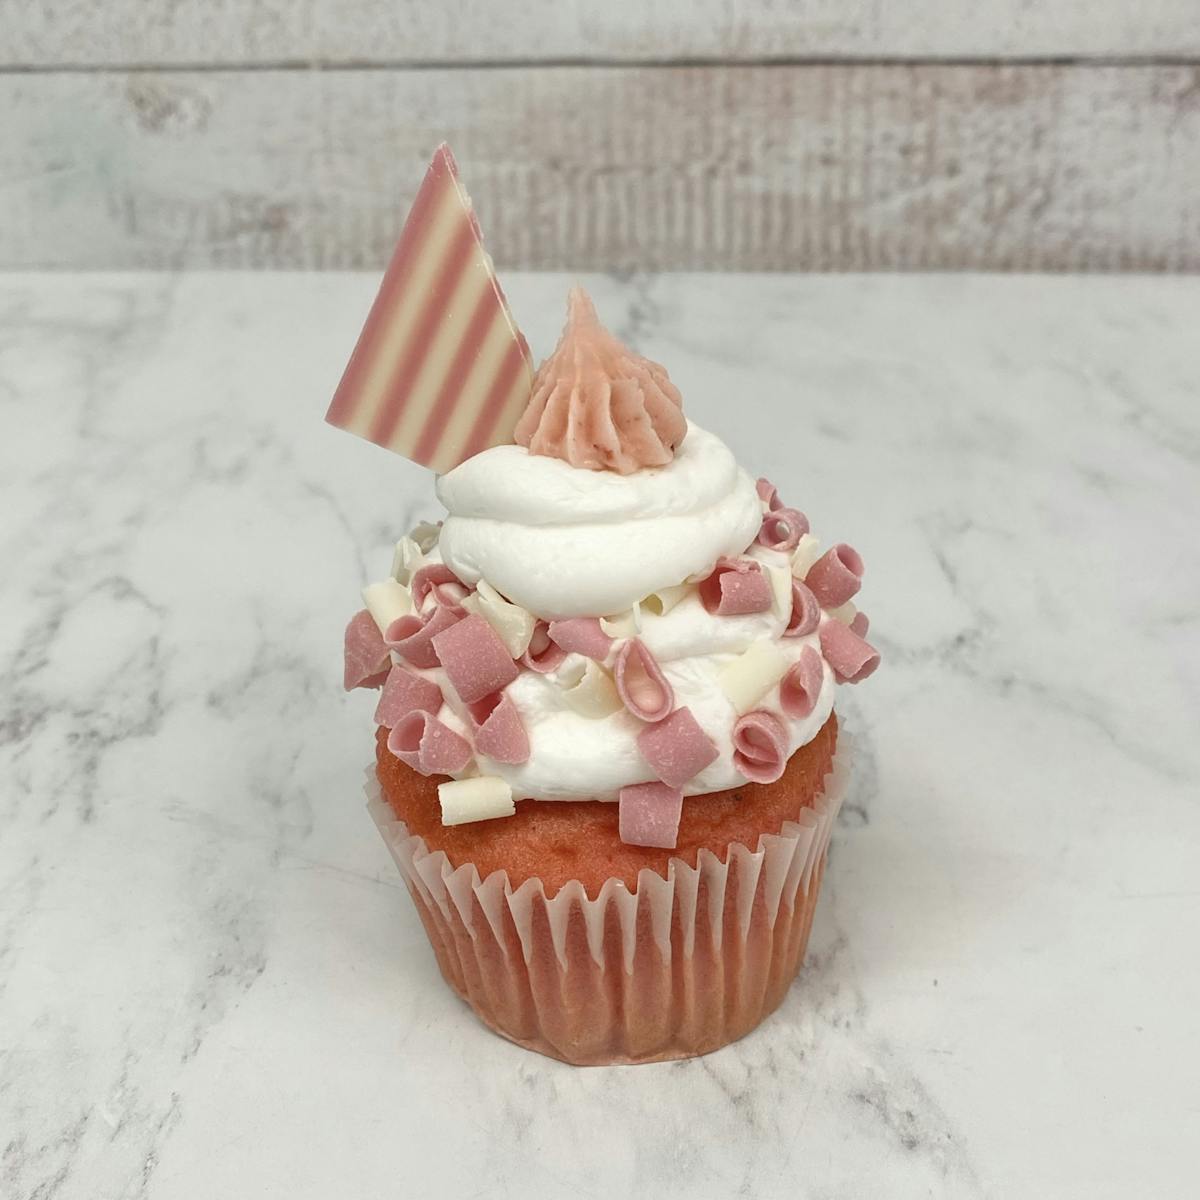 a pink cupcake